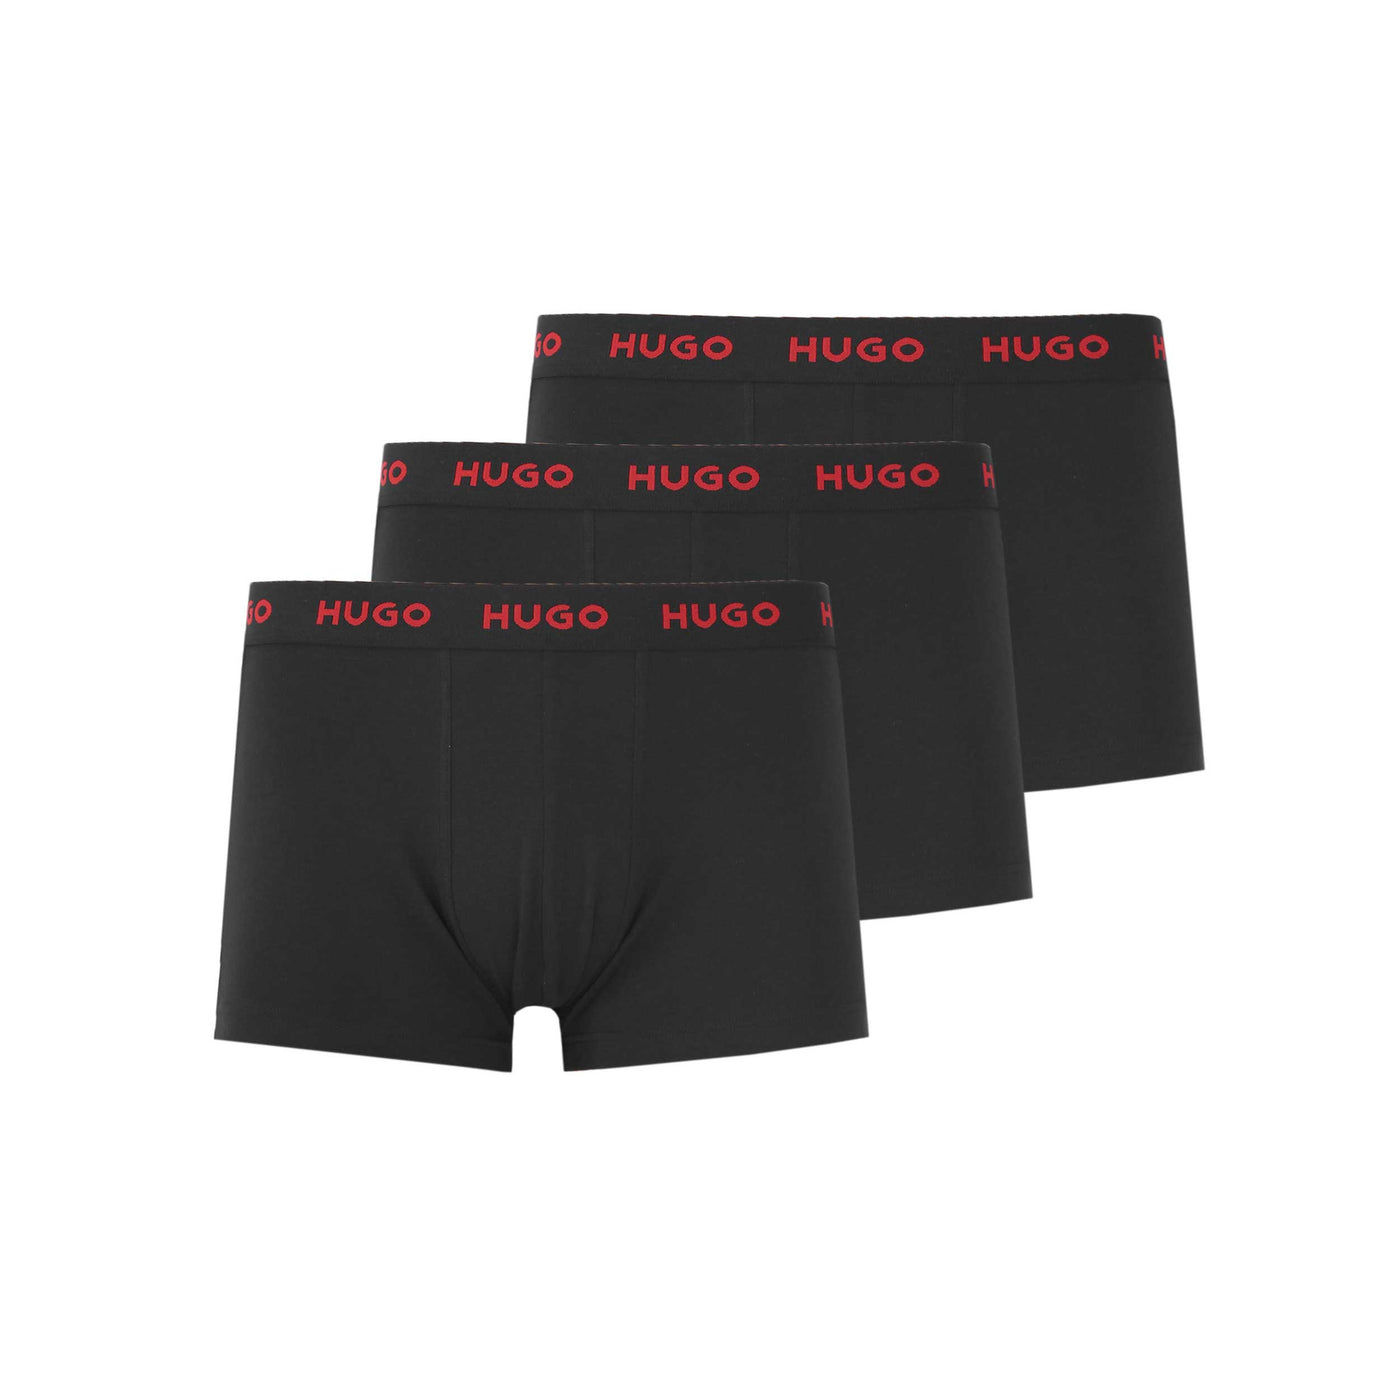 HUGO Trunk Triplet Pack Underwear in Black